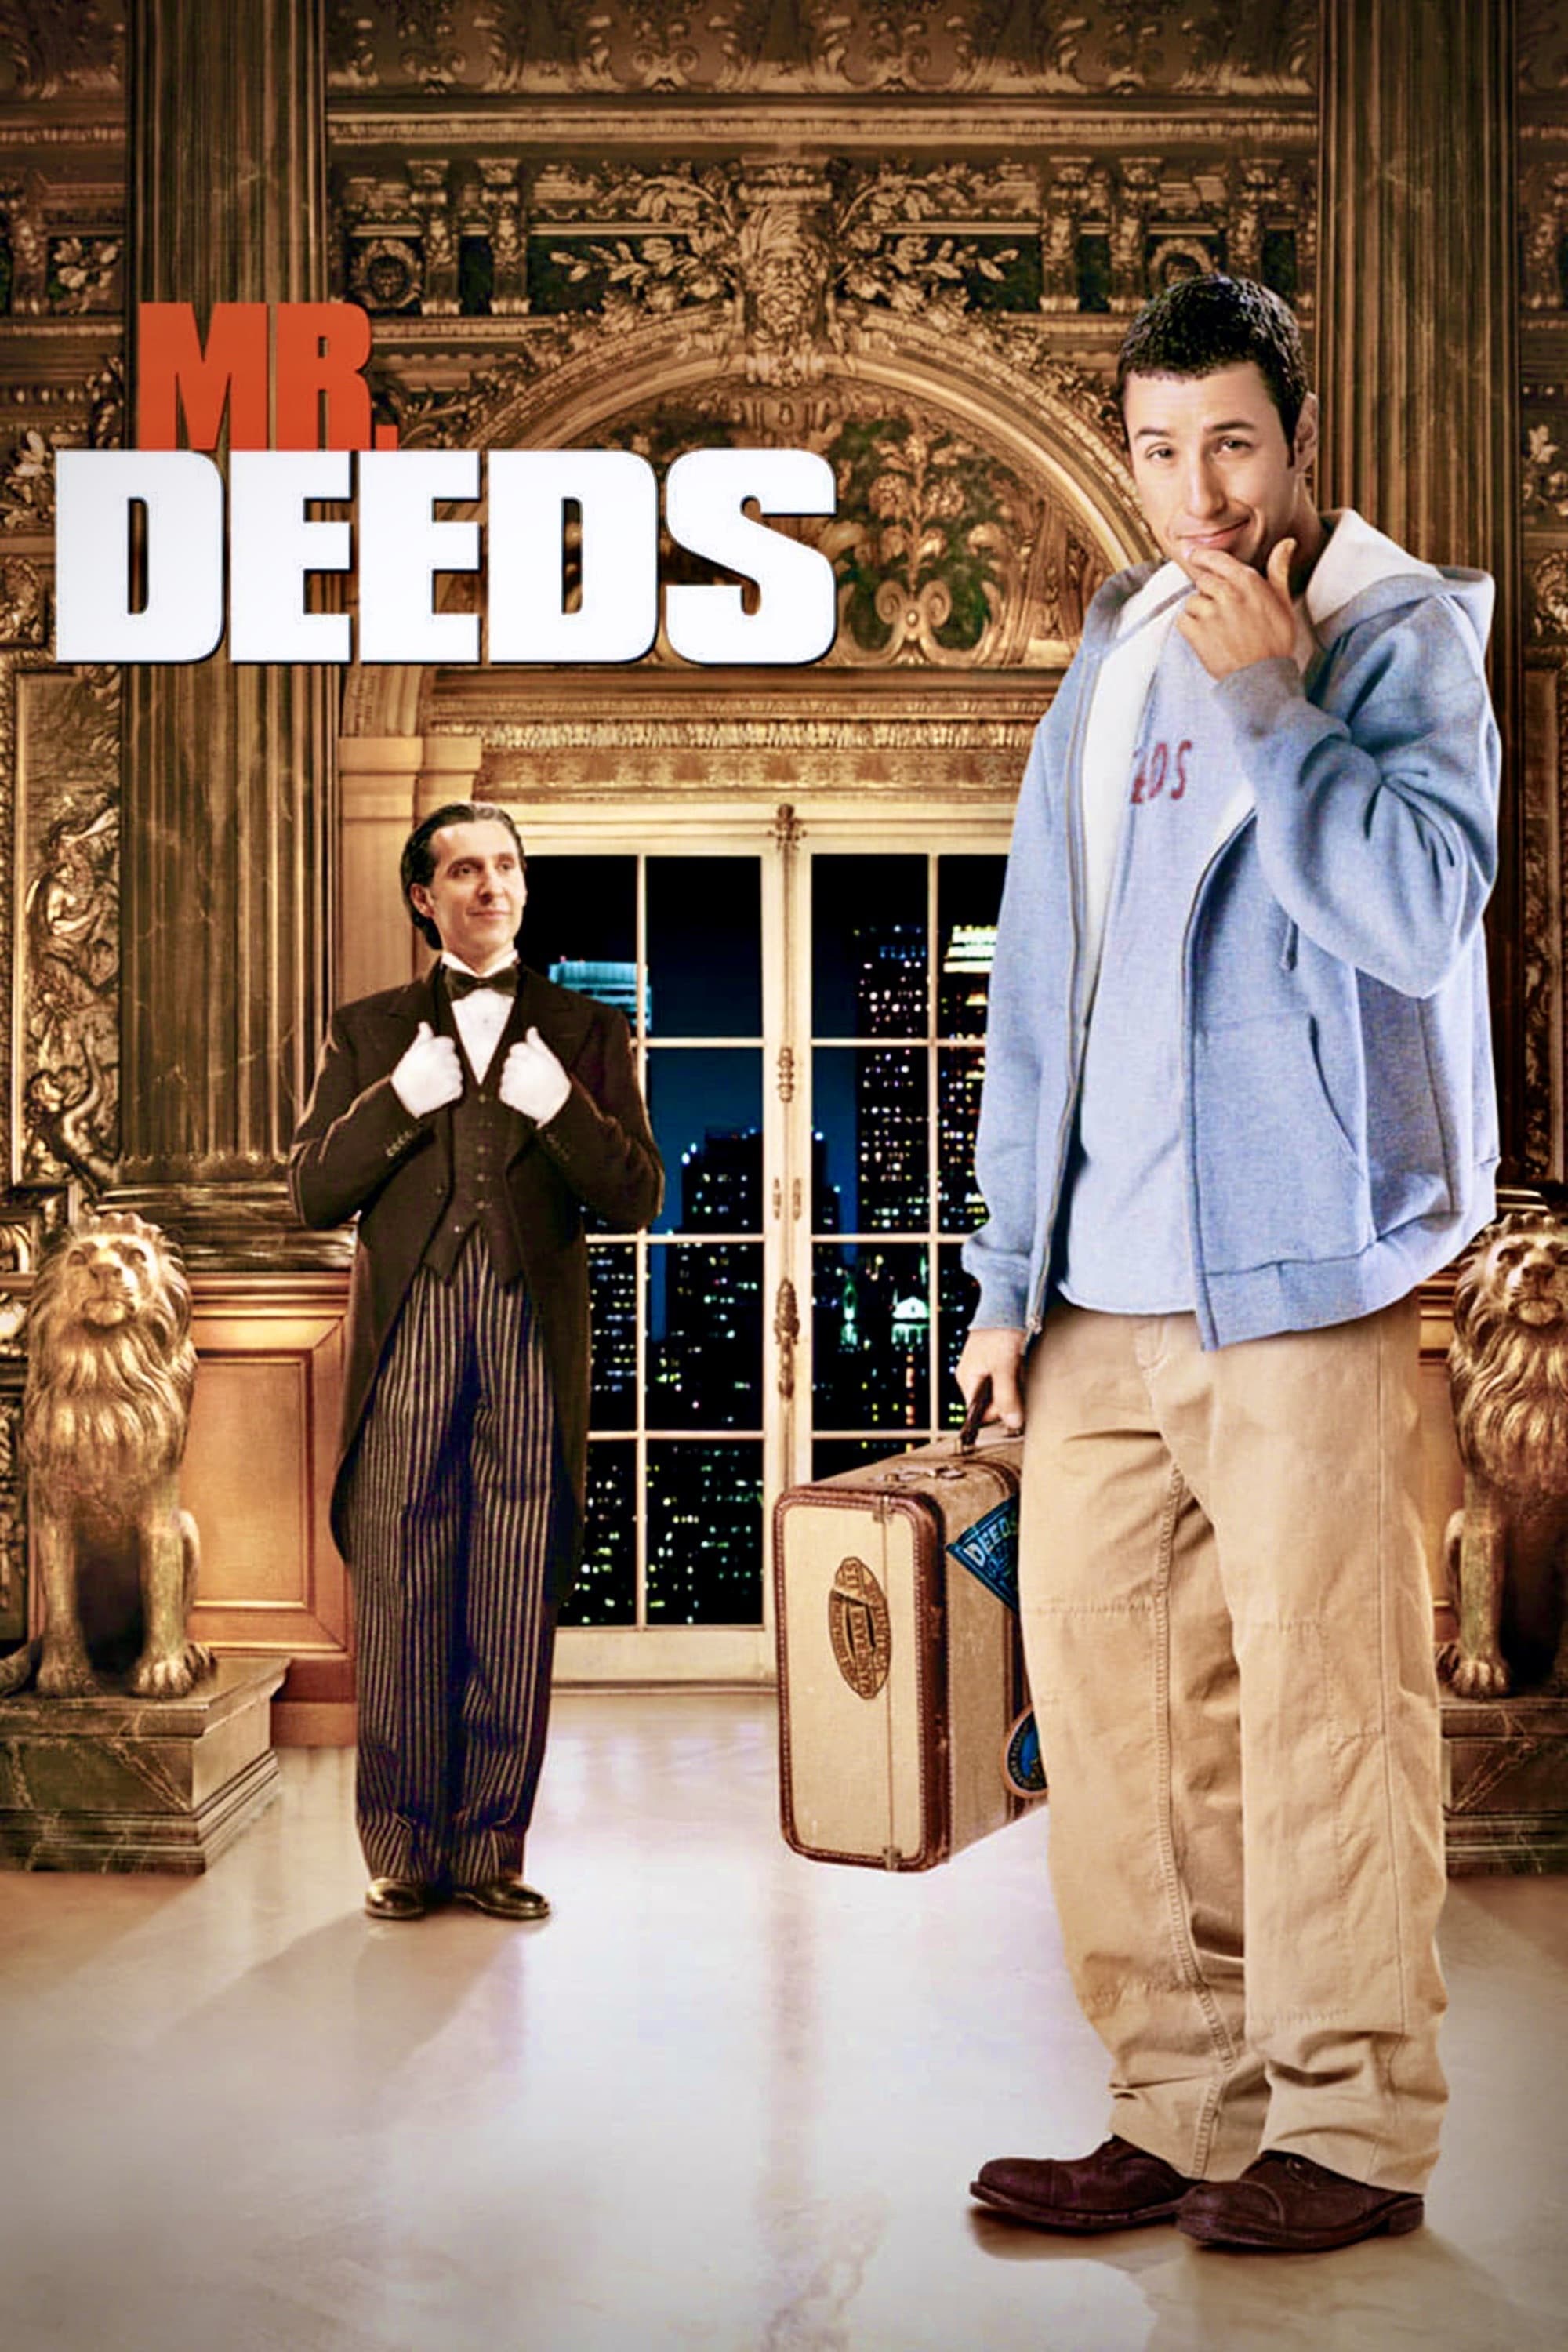 A Herança de Mr. Deeds (2002)